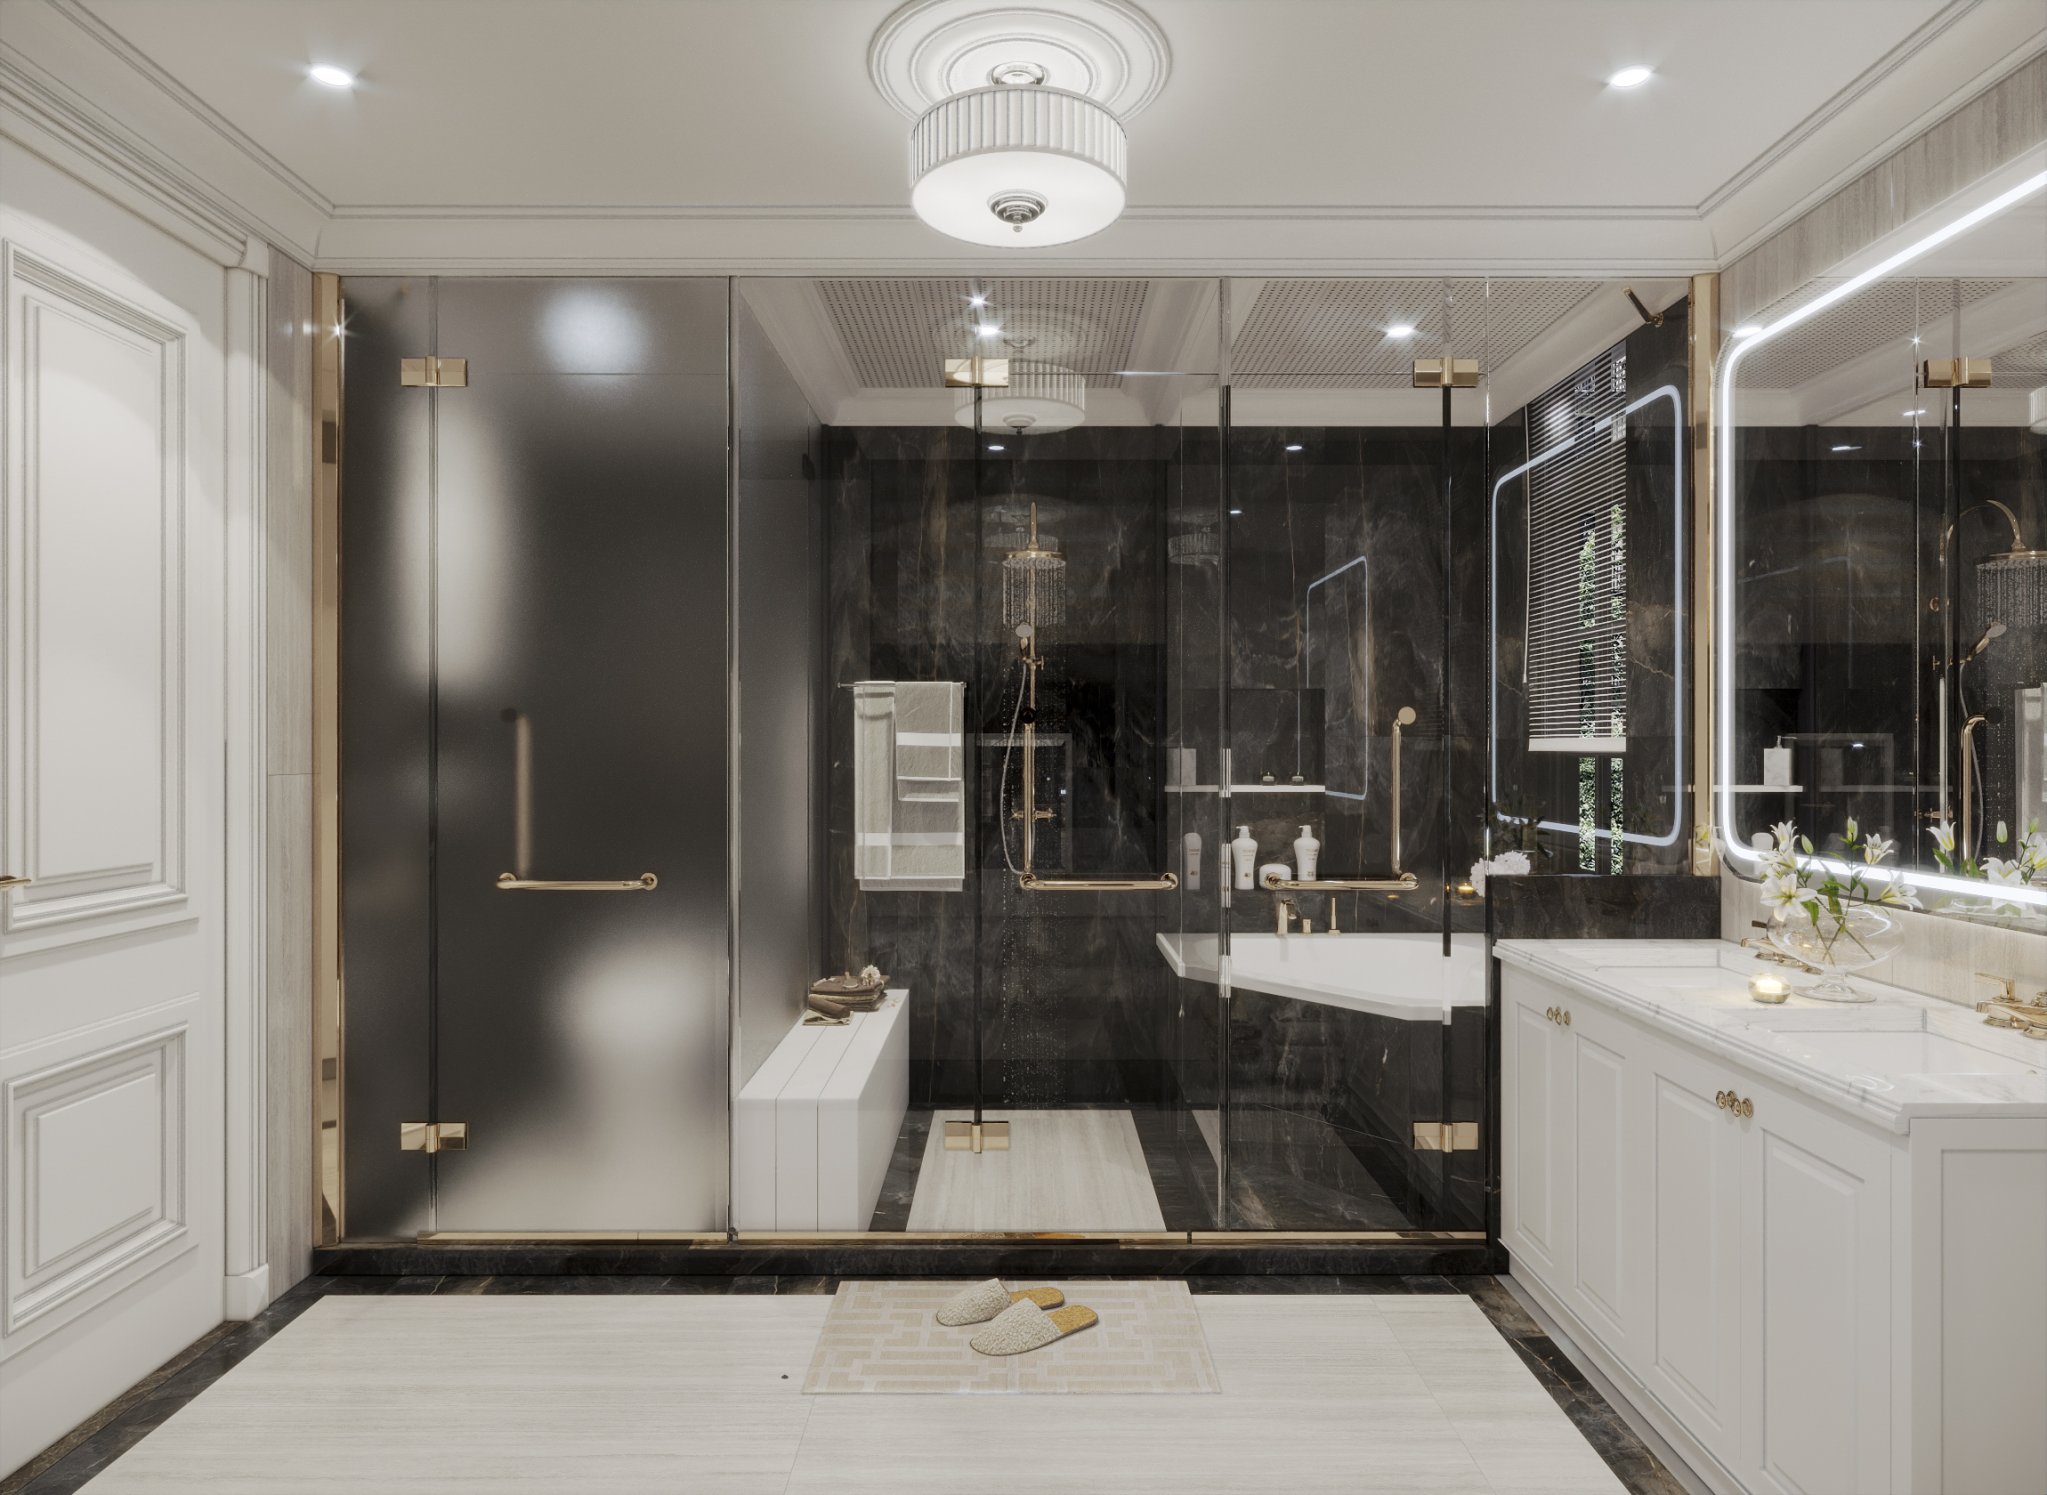 Thiết kế phòng tắm biệt thự hiện đại đầy đủ công năng và thư giãn